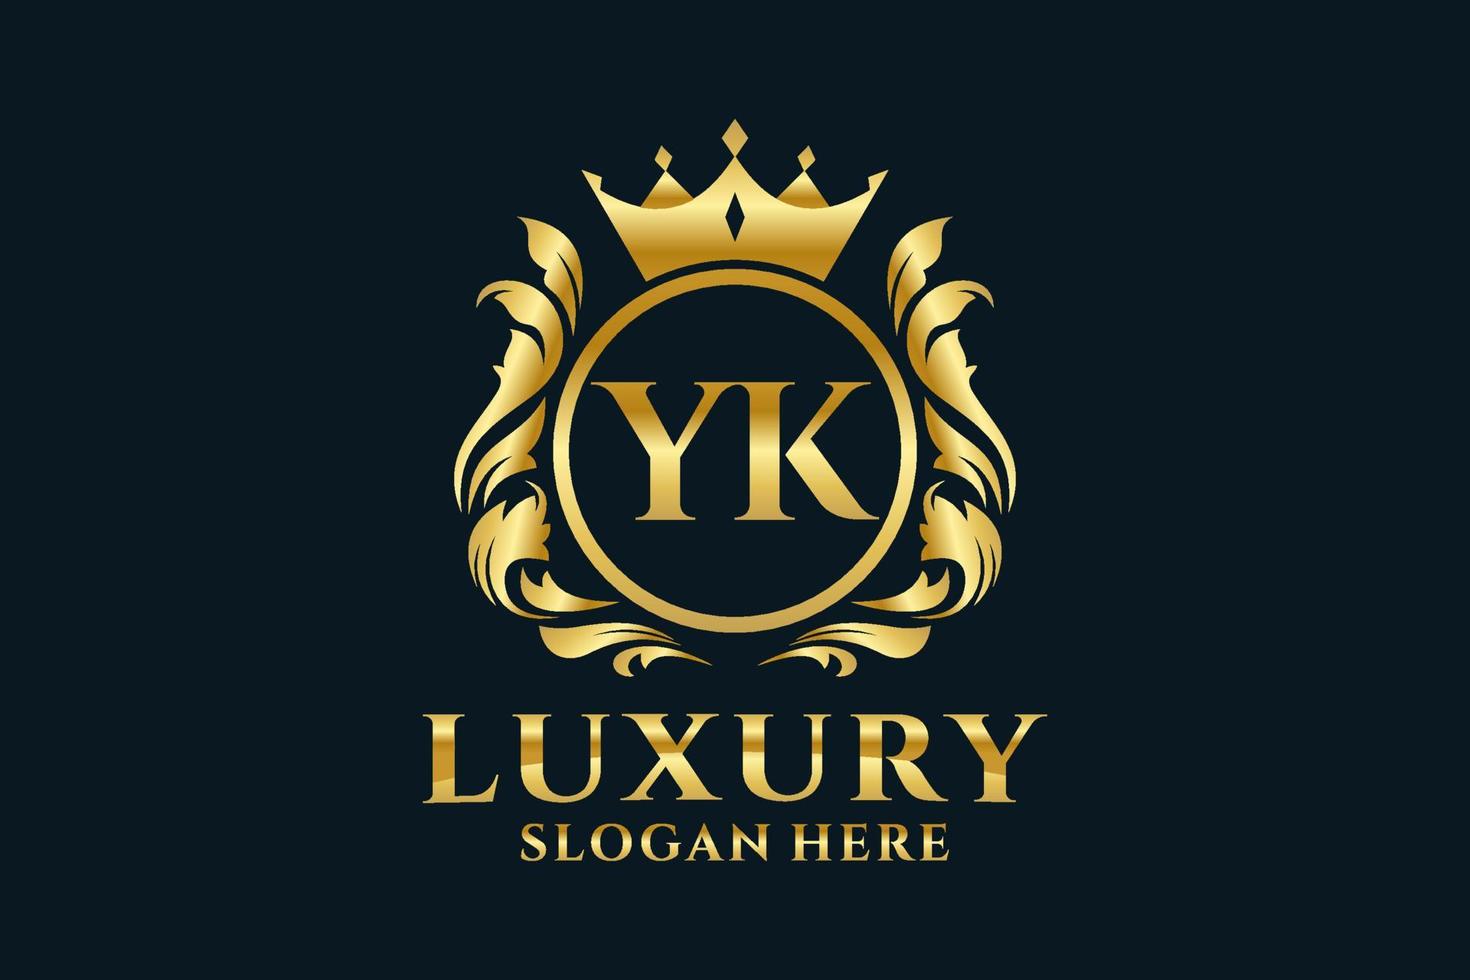 plantilla de logotipo de lujo real con letra yk inicial en arte vectorial para proyectos de marca de lujo y otras ilustraciones vectoriales. vector